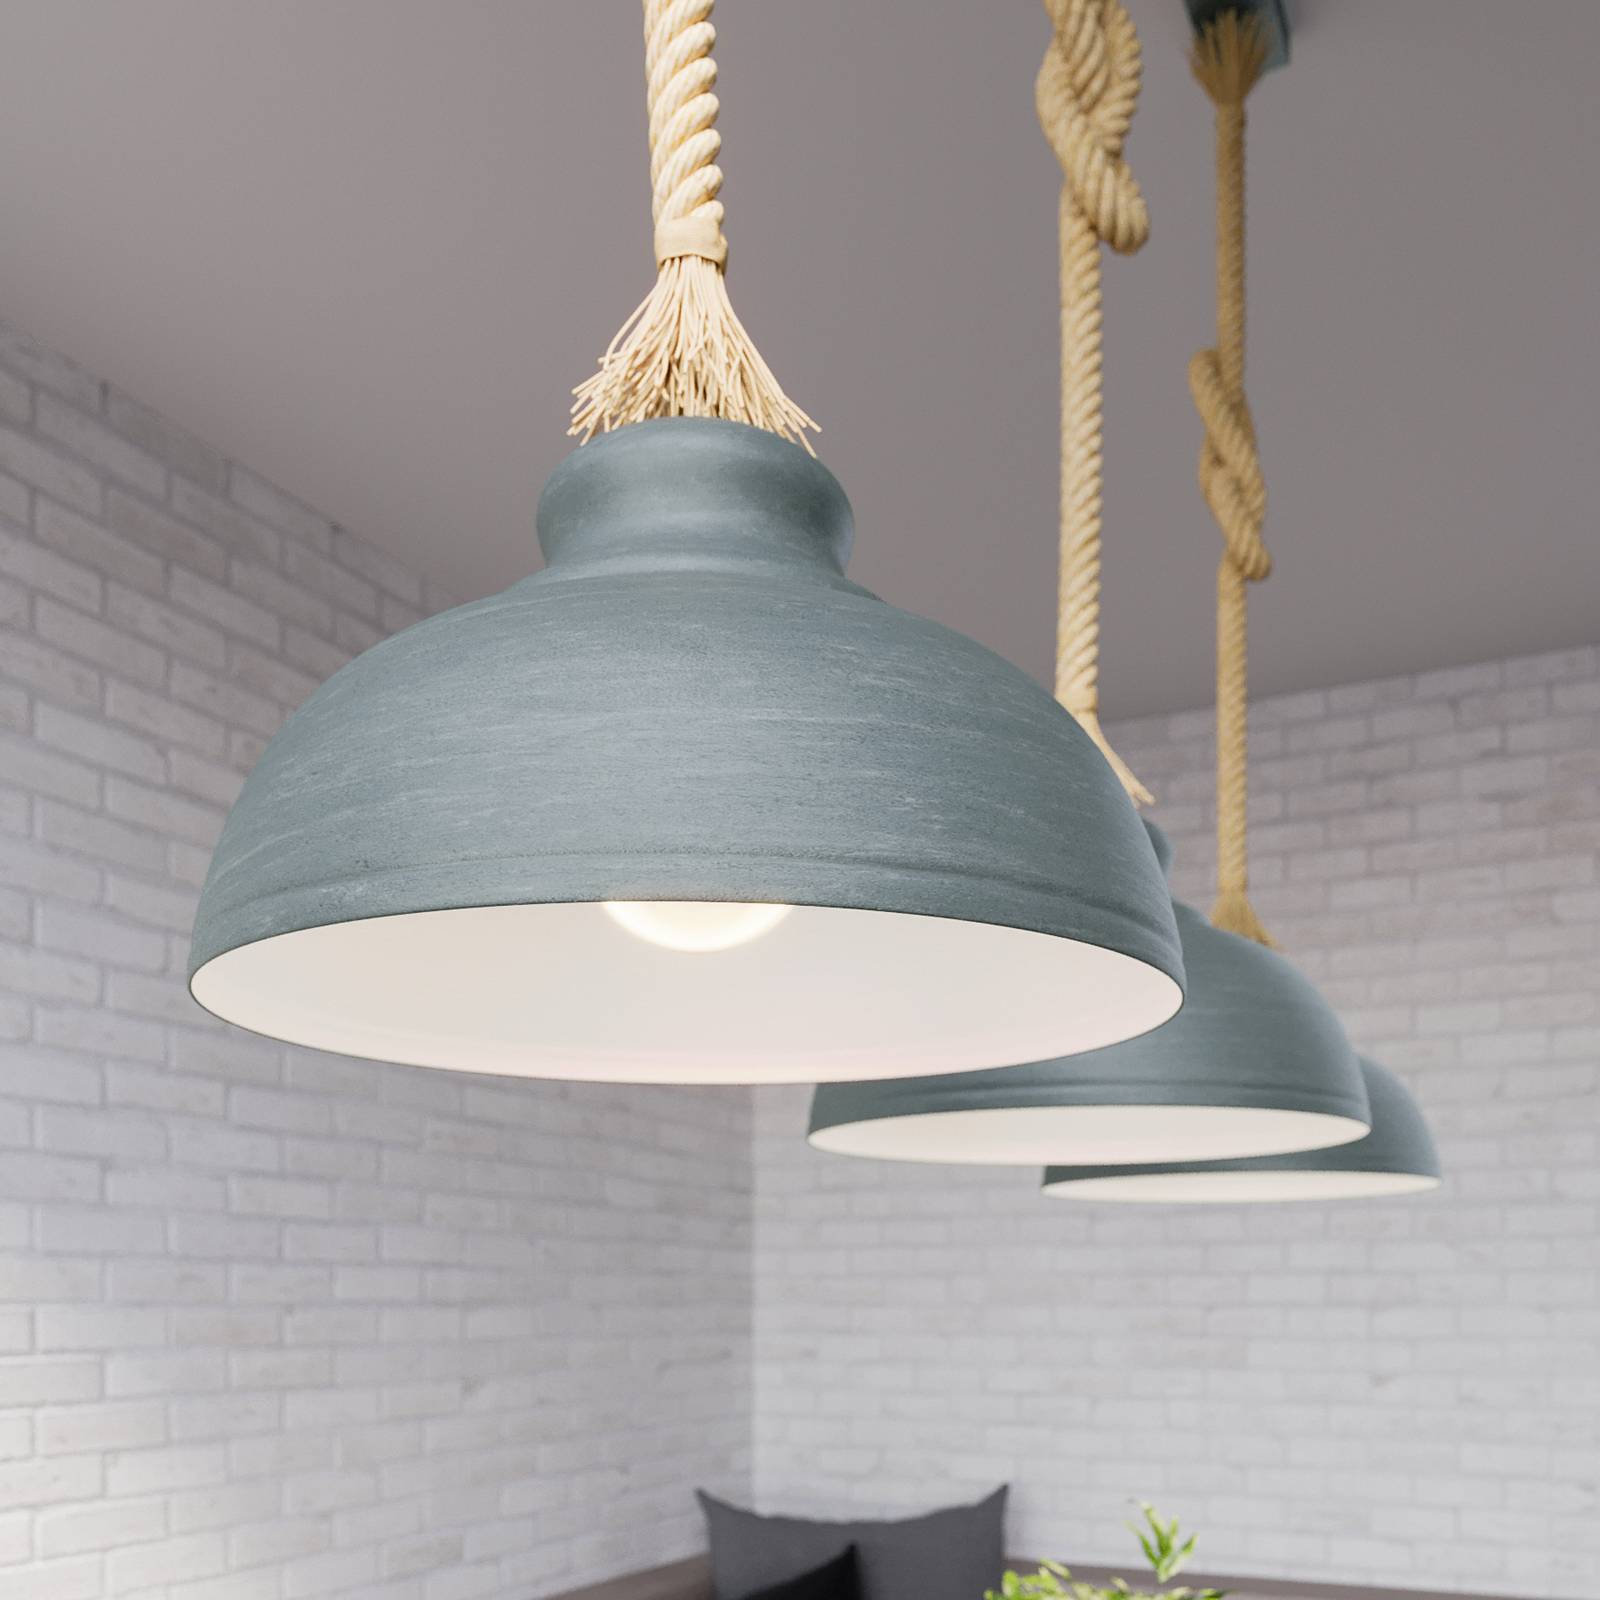 Kan niet lezen of schrijven procent dubbellaag Lindby Chaby hanglamp in betonlook, 3-lamps | Lampen24.nl